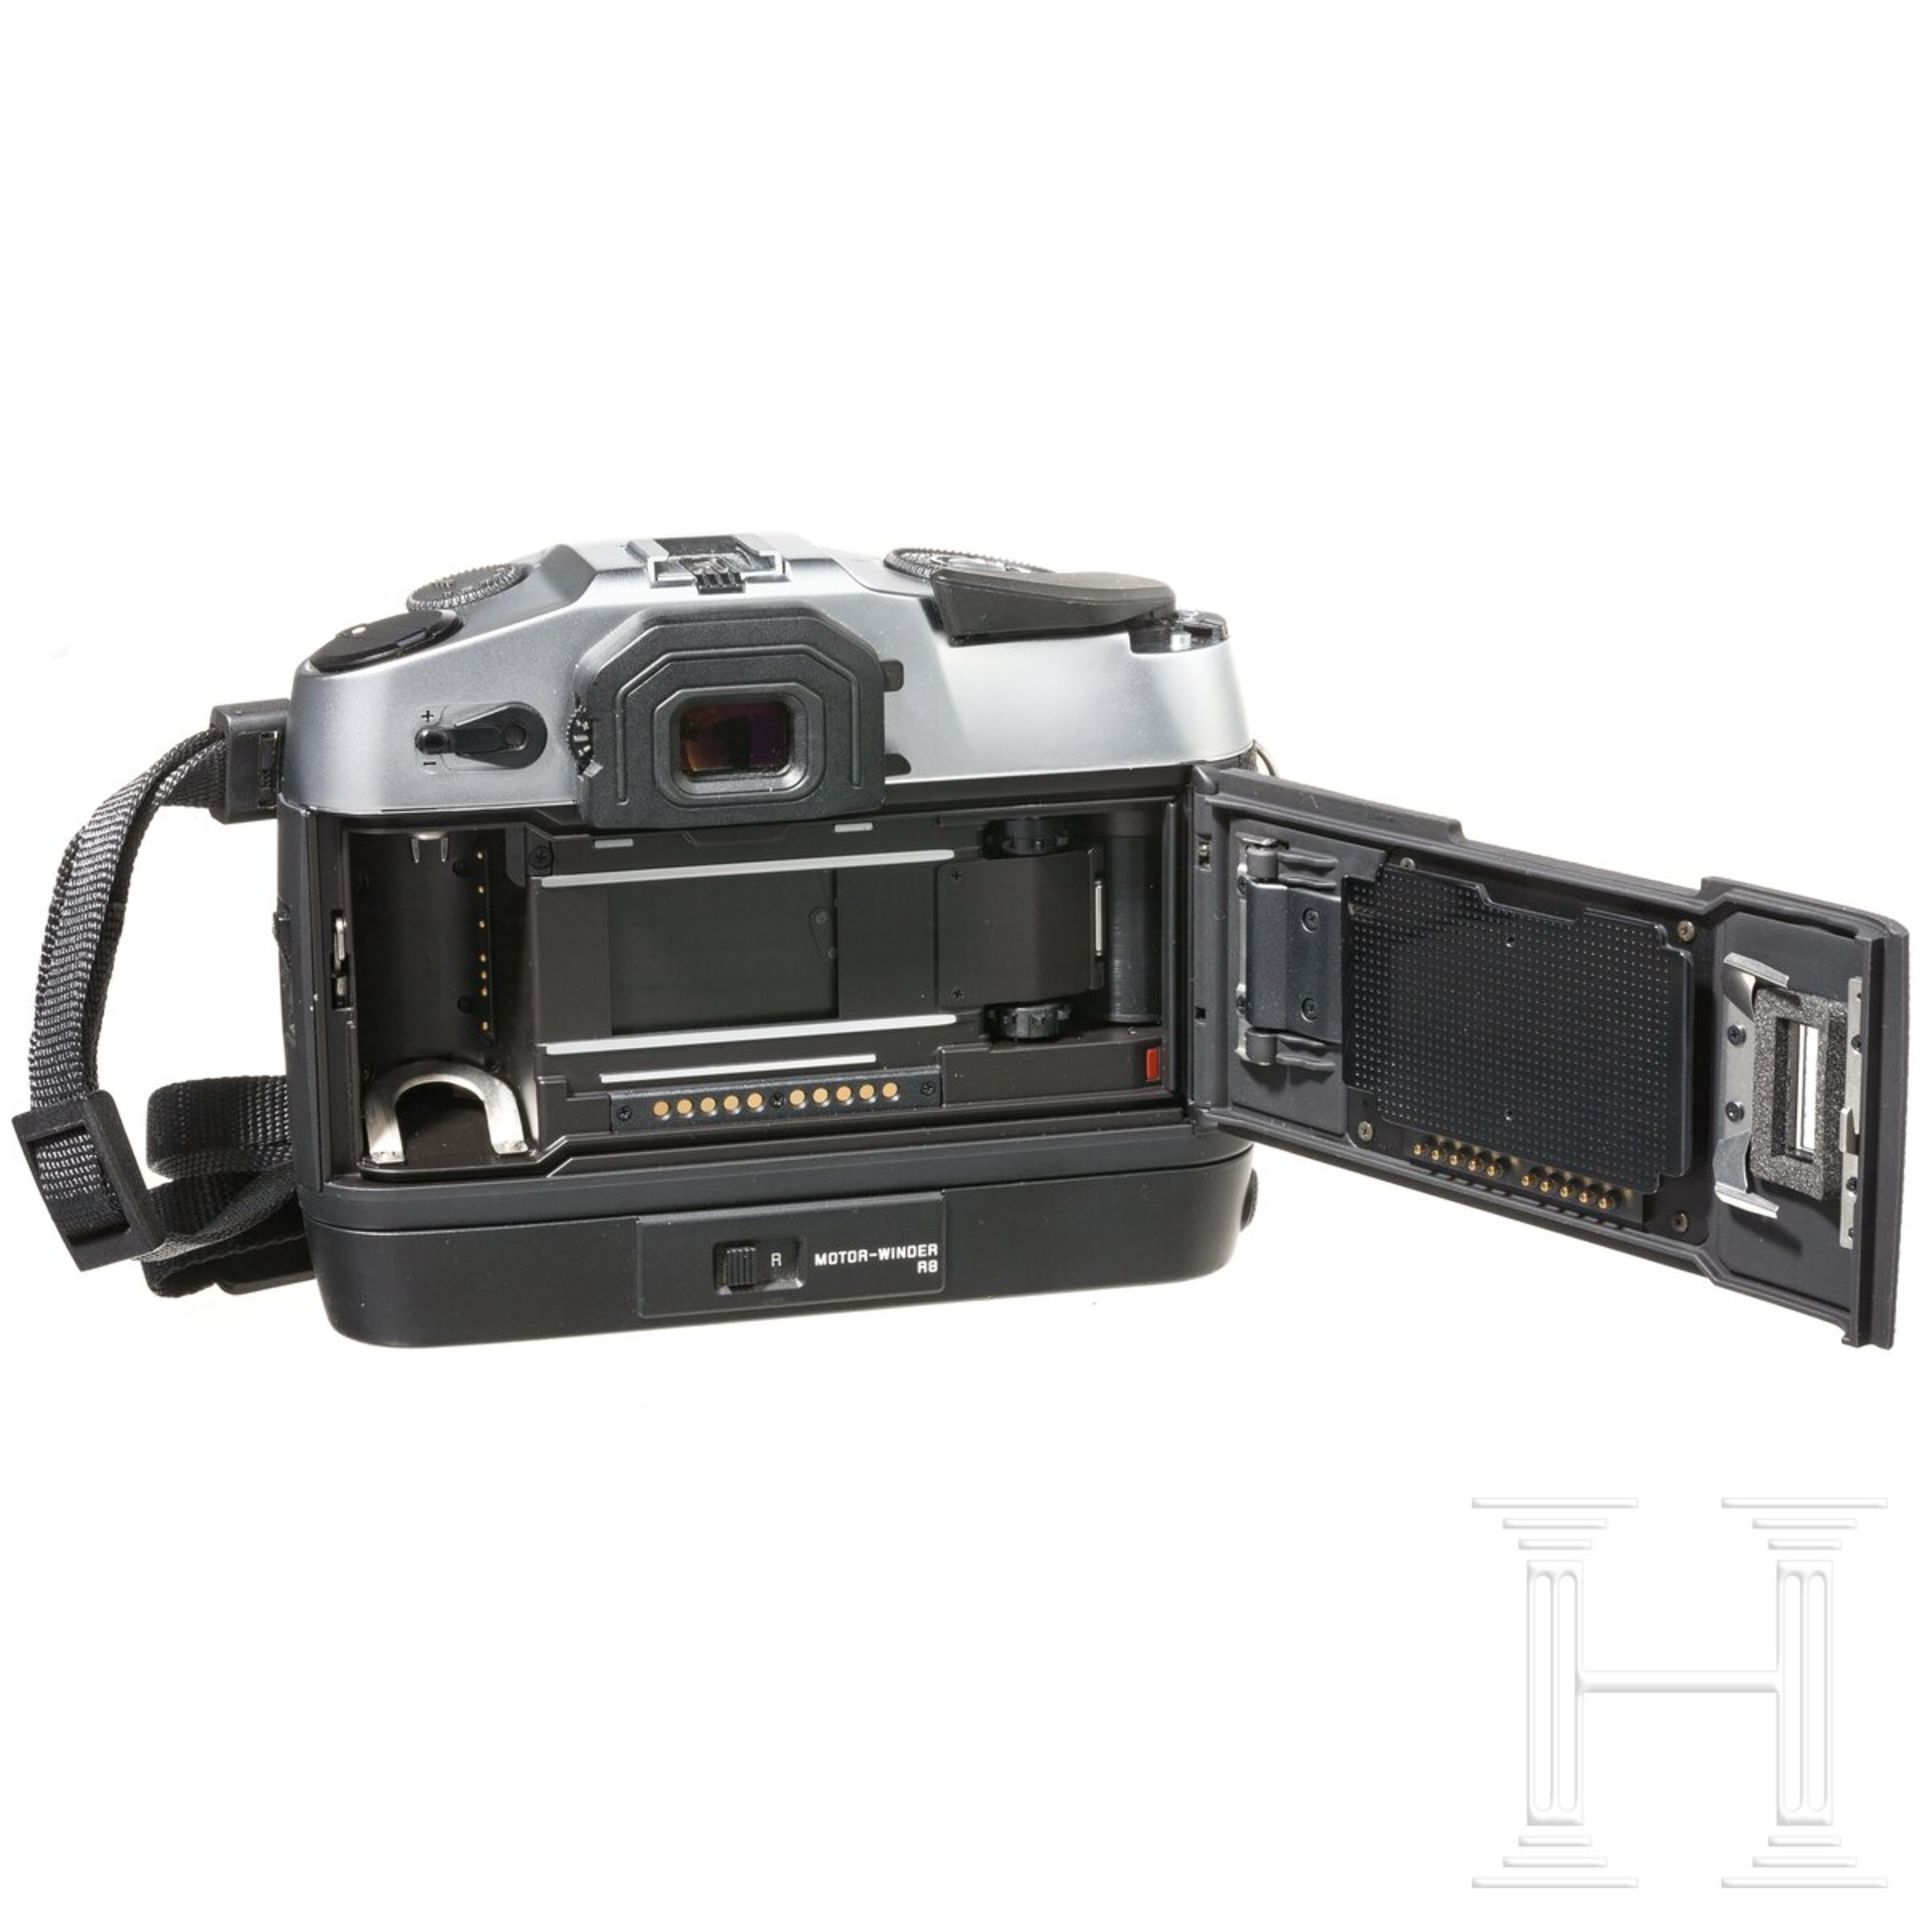 Kameragehäuse Leica R8, mit Motor-Winder, Tragekoffer - Image 6 of 6